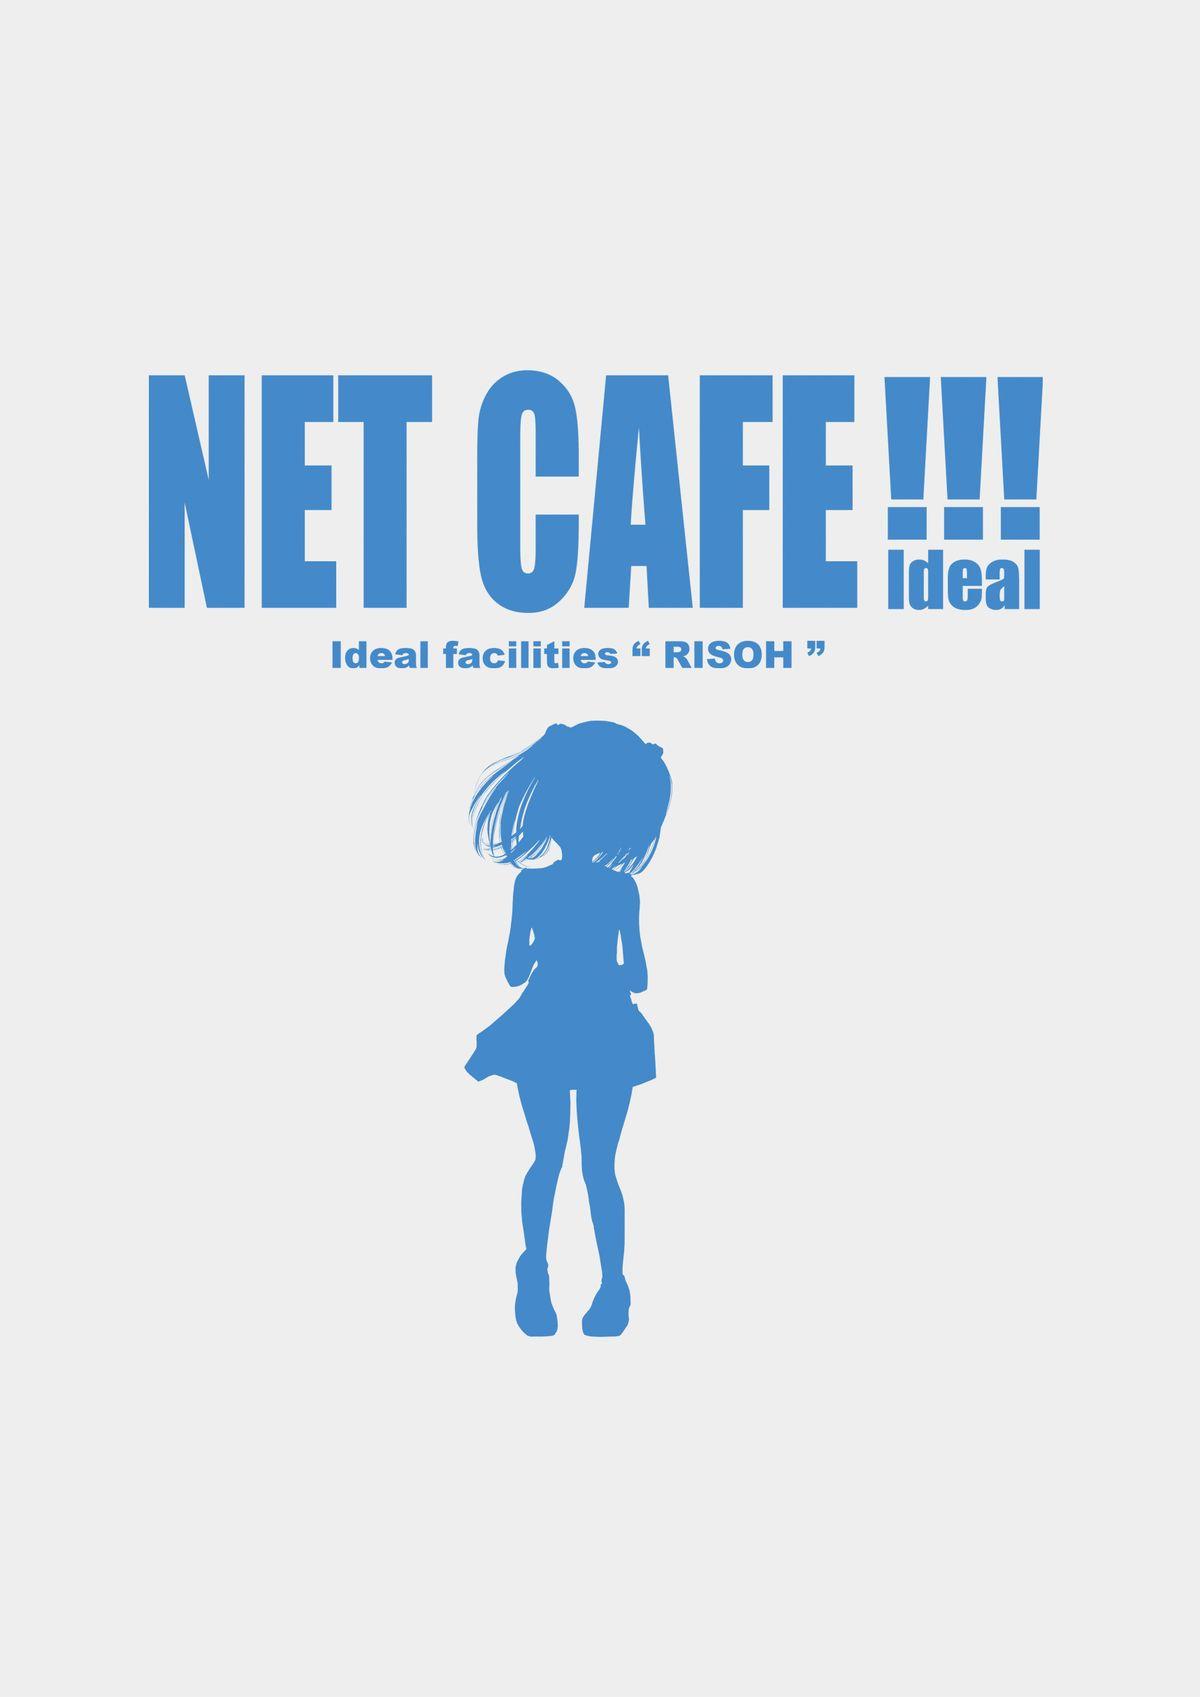 NET CAFE!!! 4